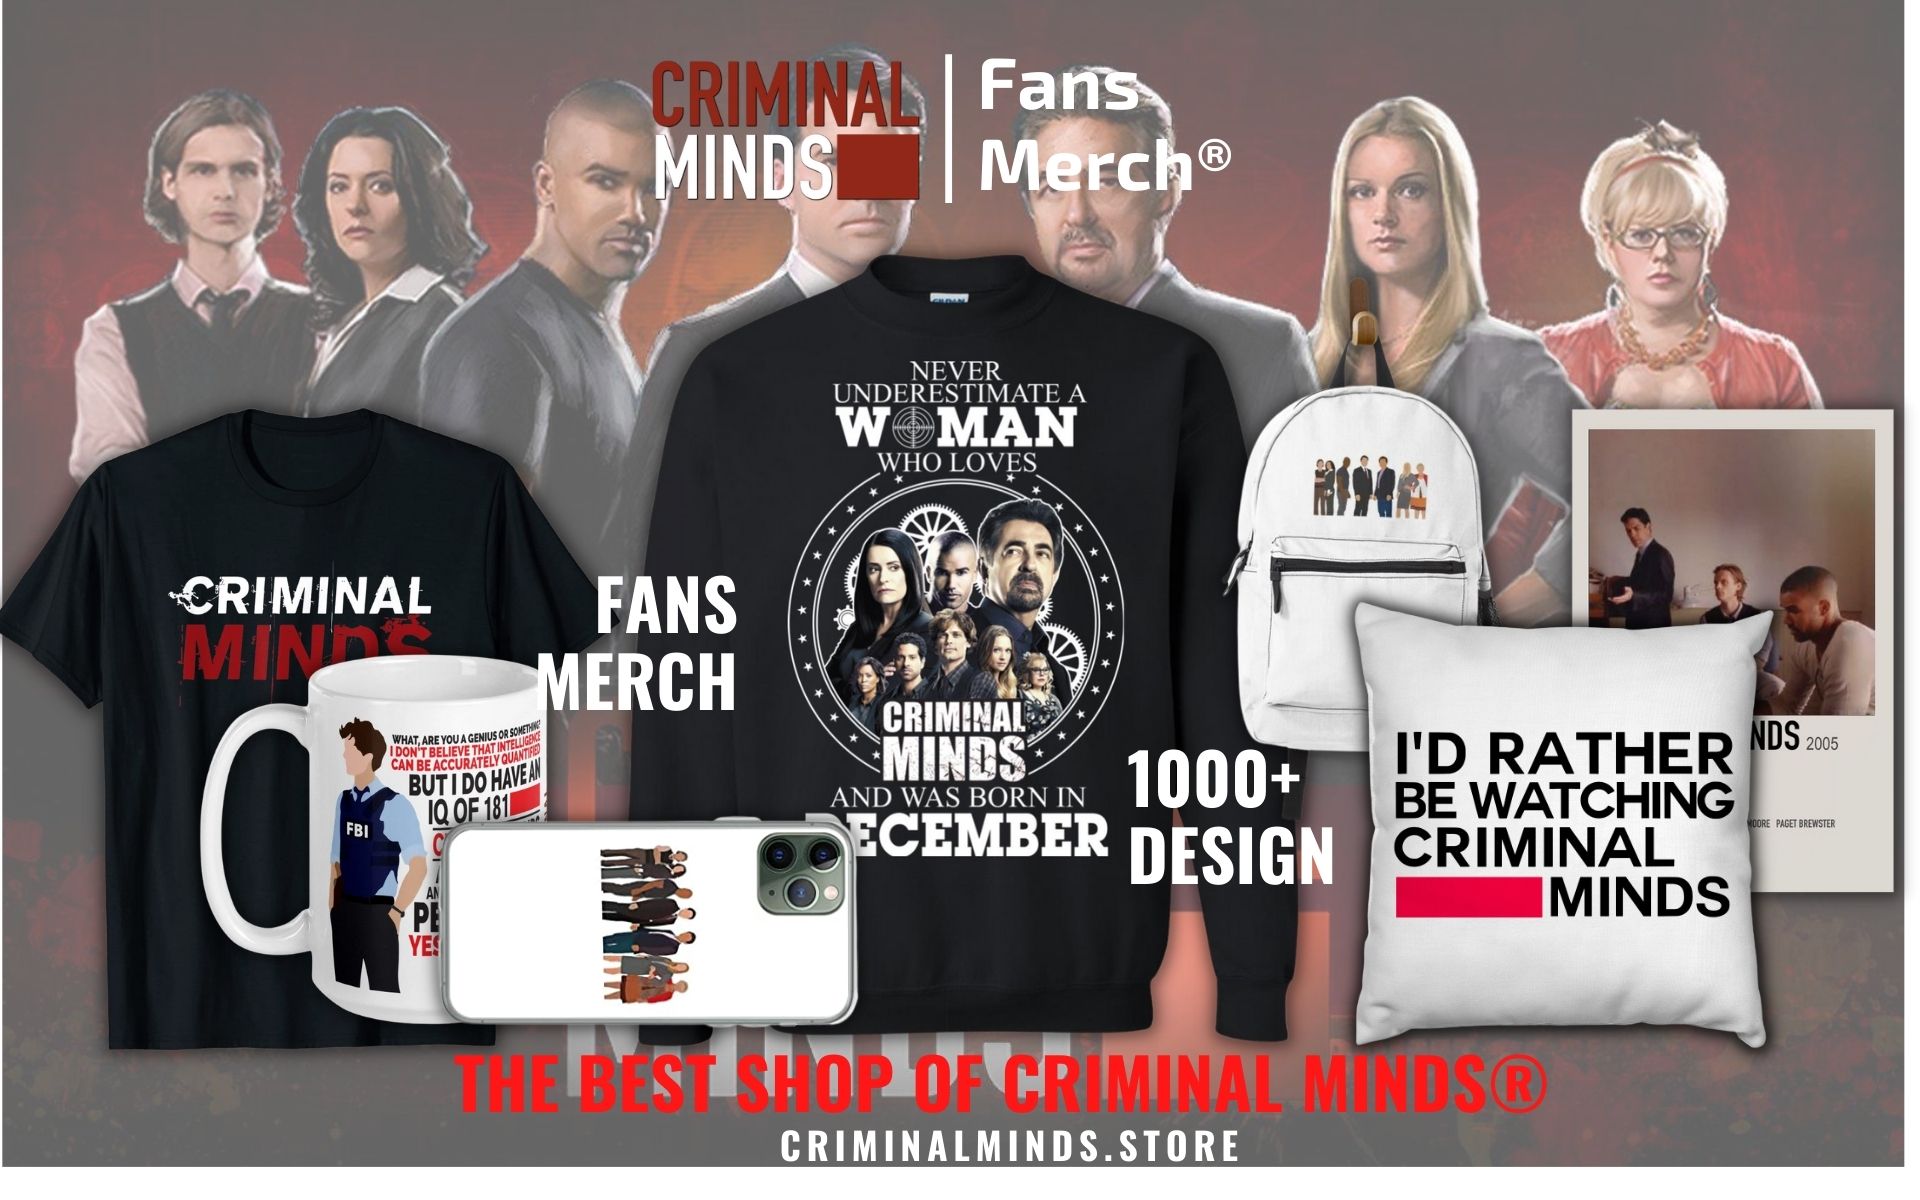 Criminal Minds Store Web Banner - Criminal Minds Store